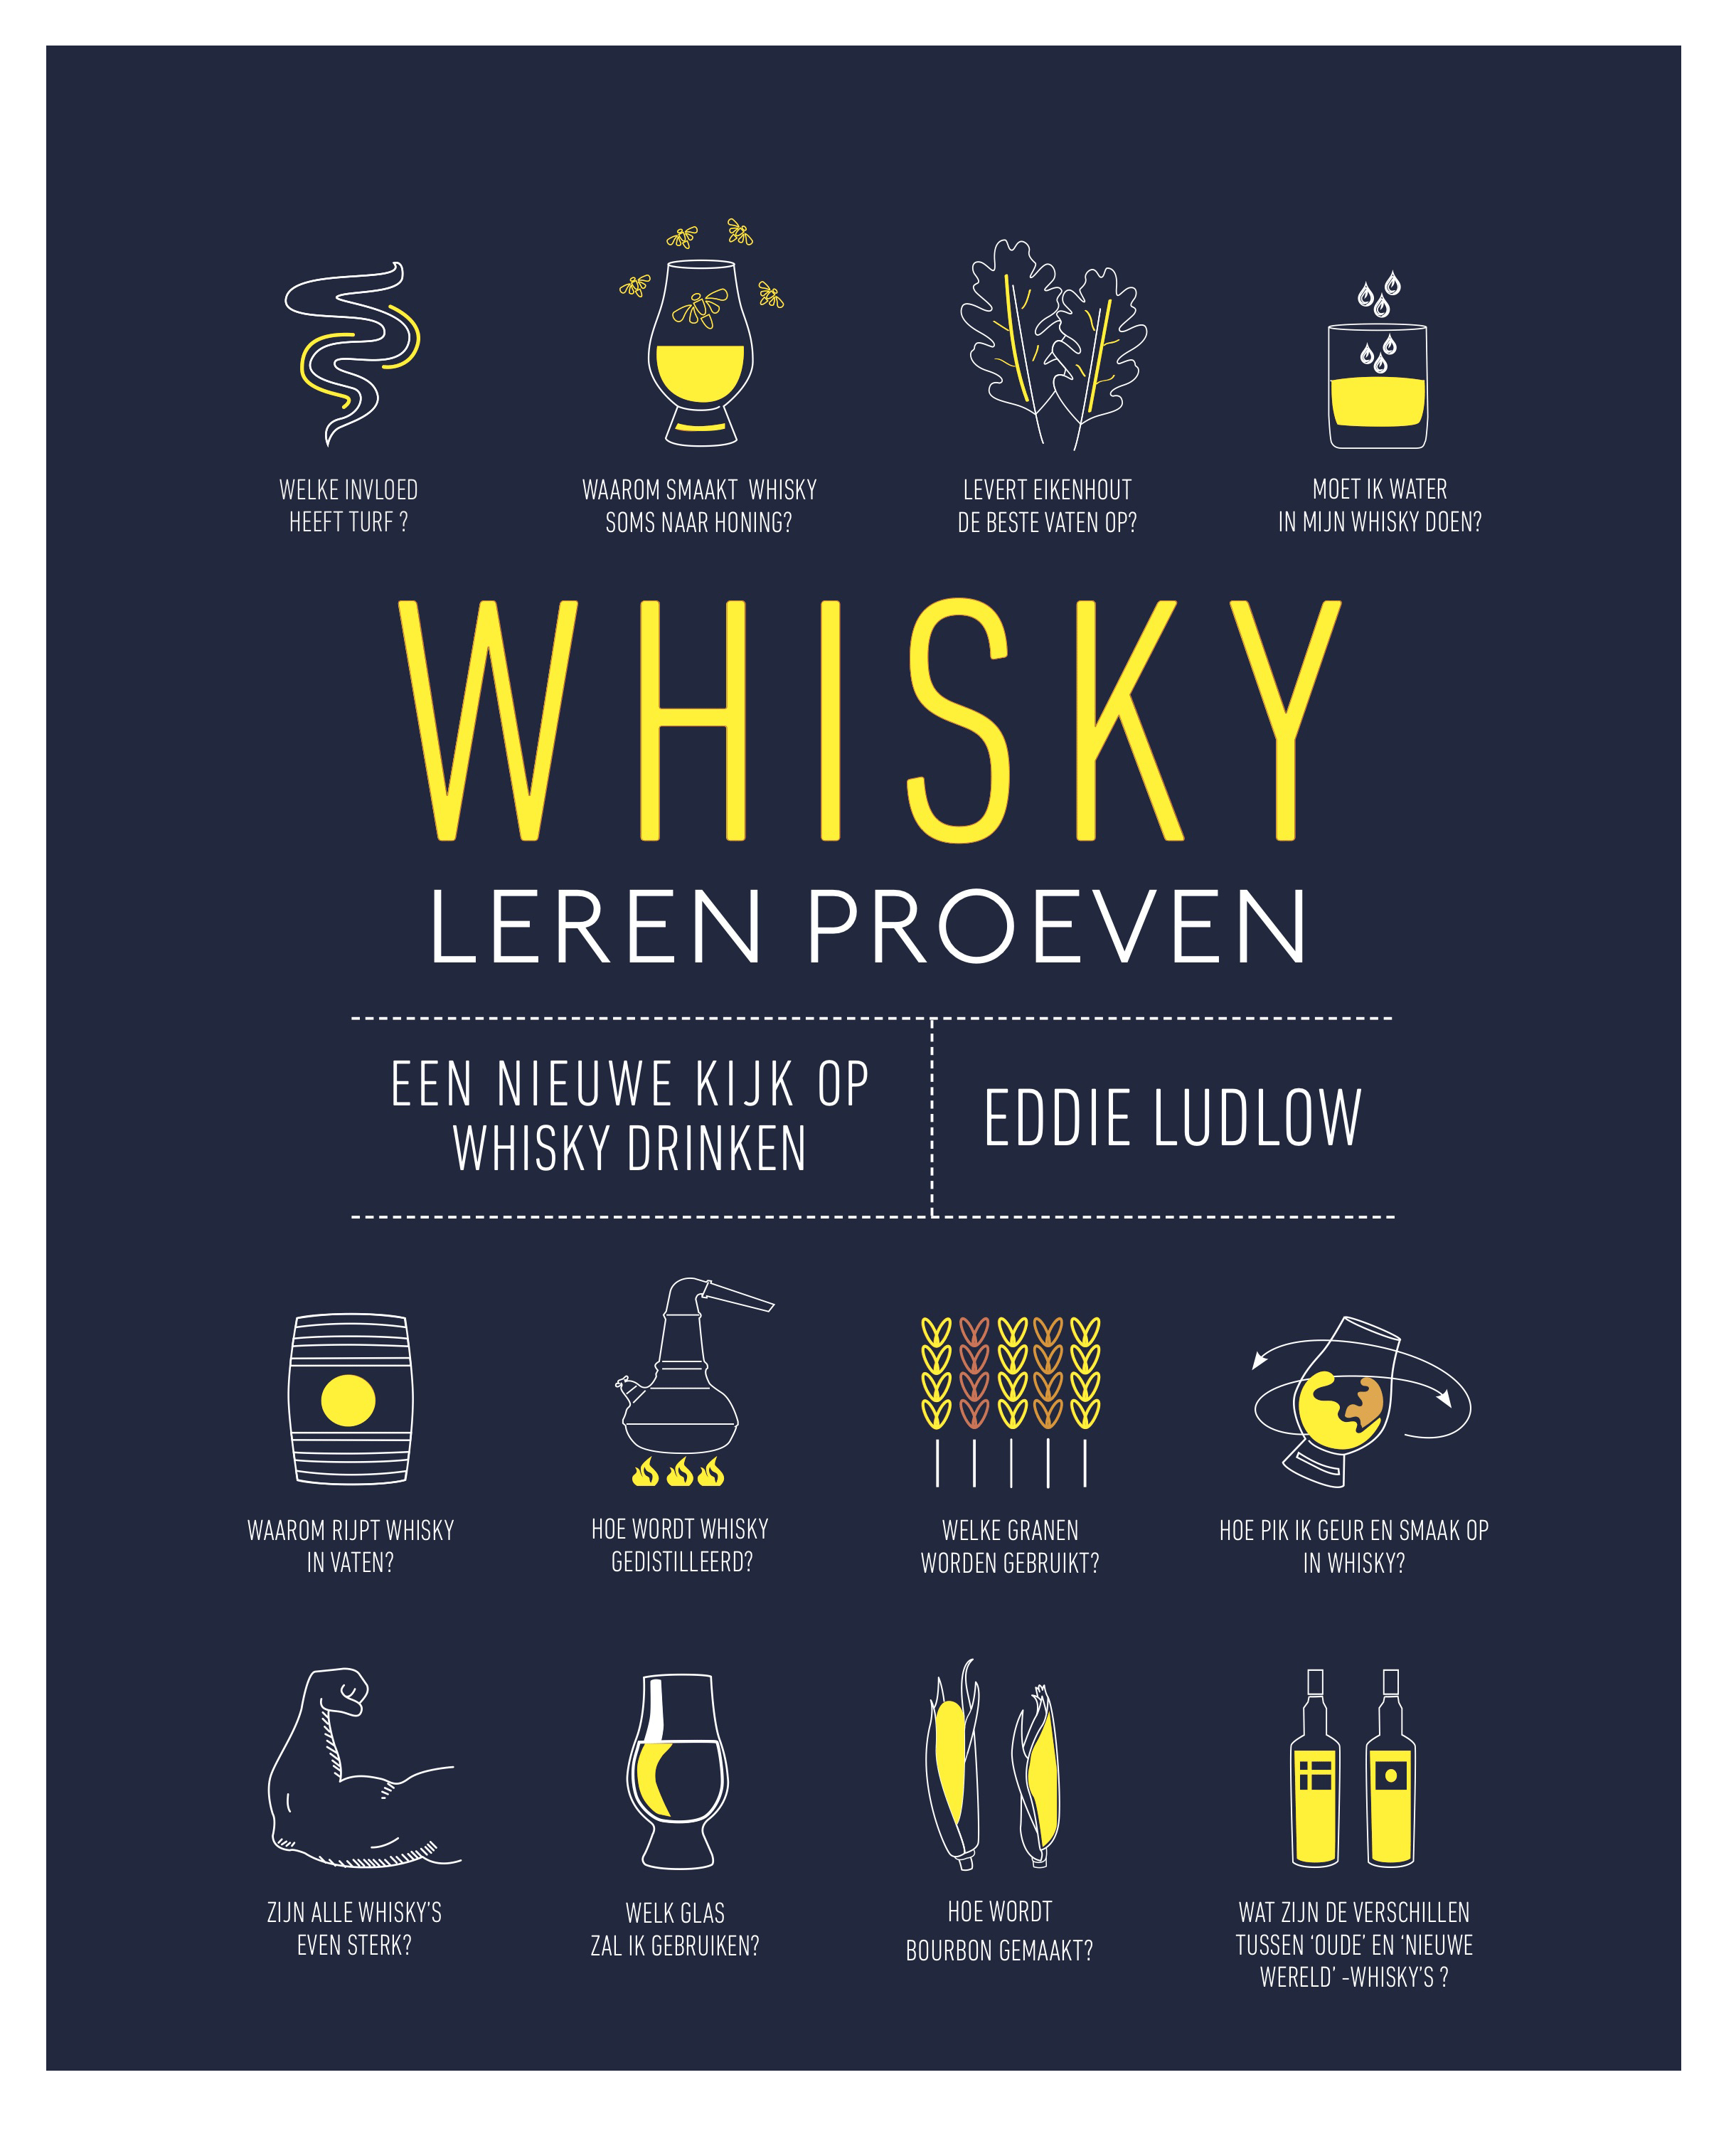 Whisky Leren Proeven omslag